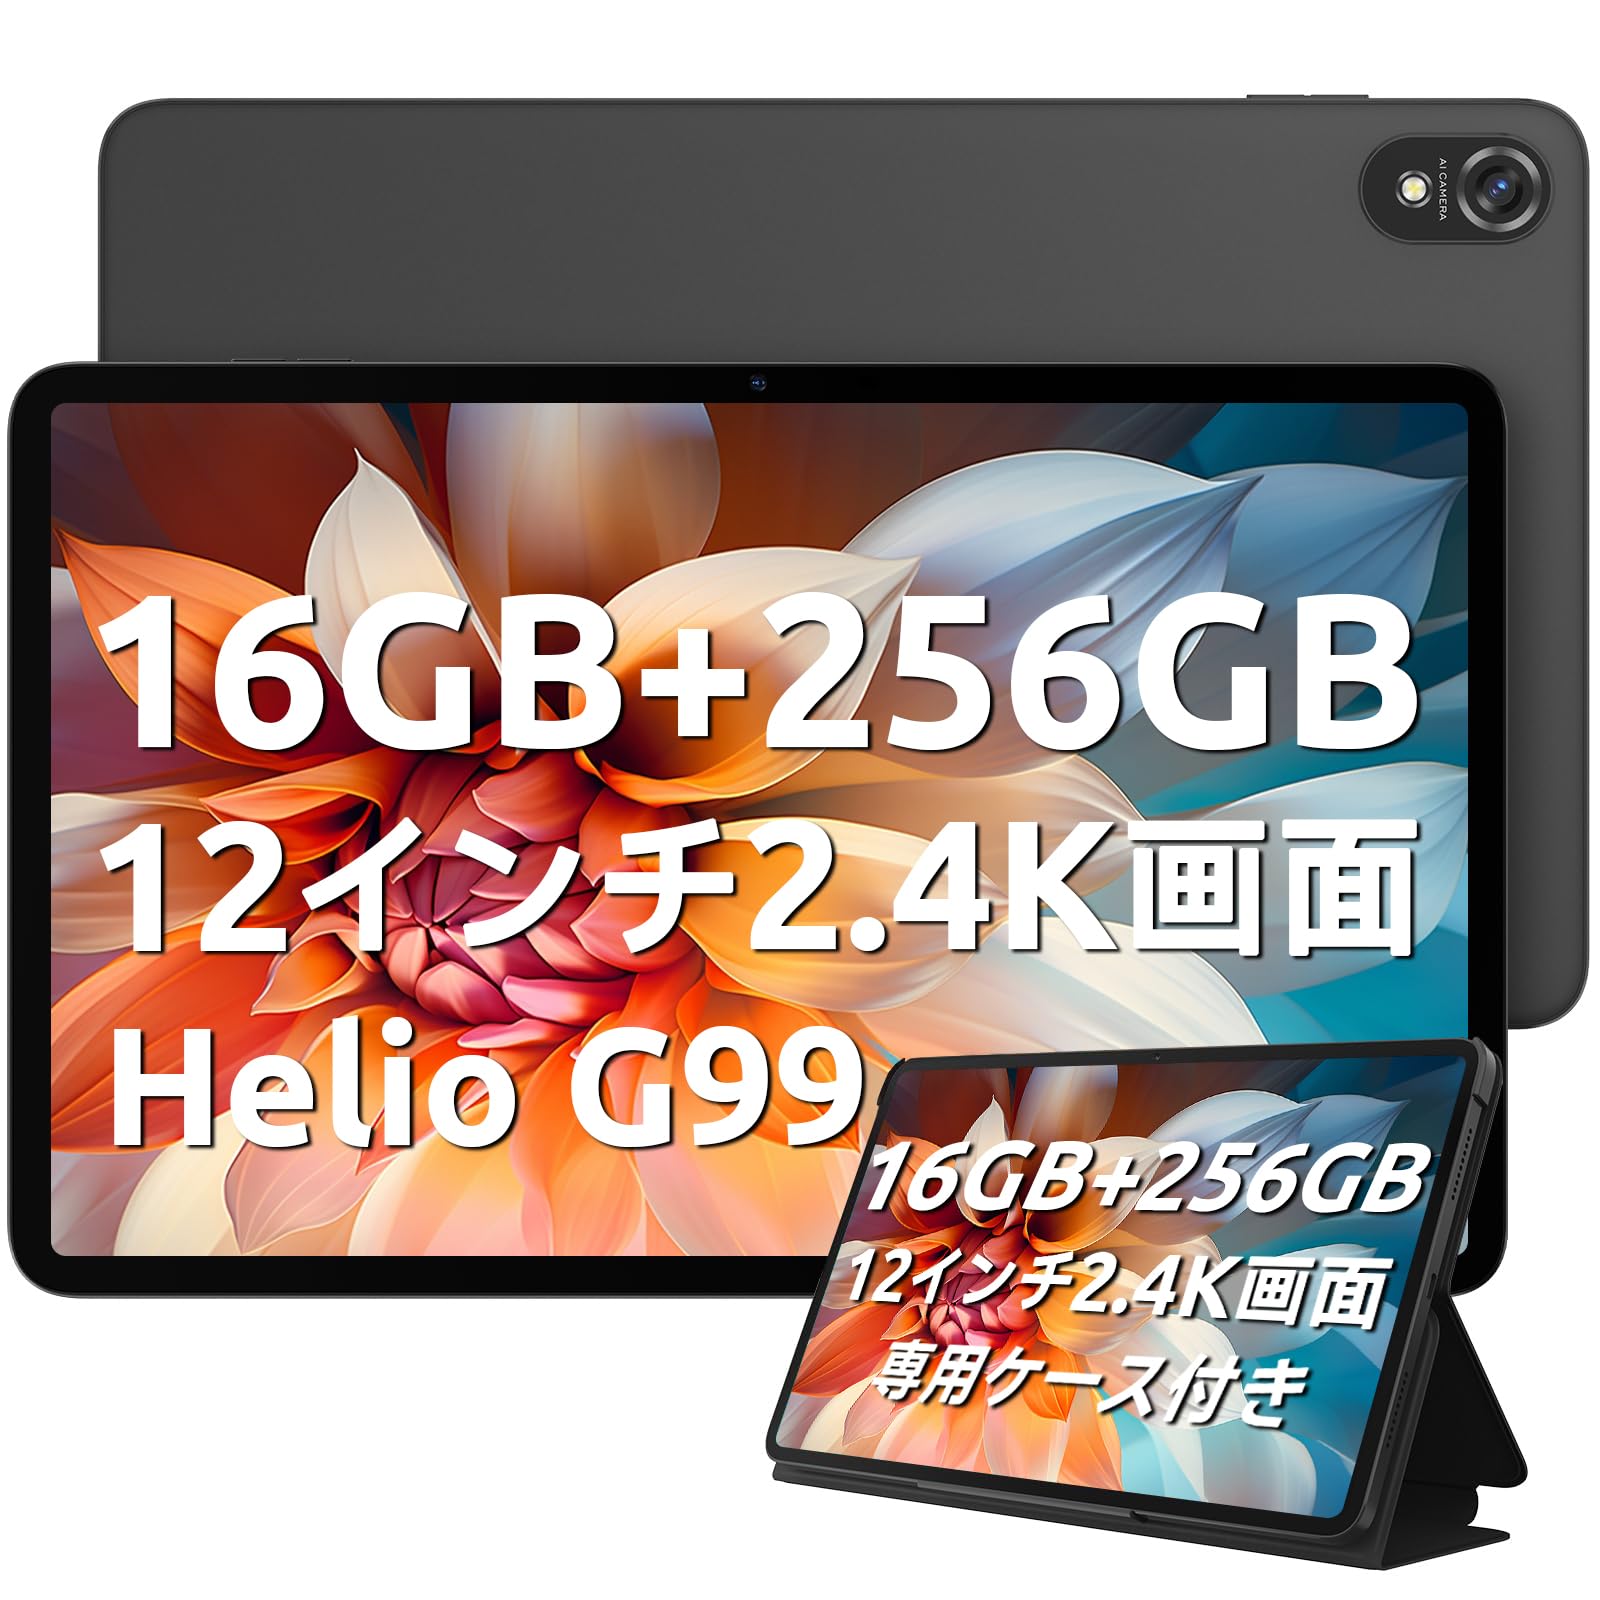 【新登場タブレット 12インチ】Blackview Tab18 Android 13 タブレット16GB+256GB+1TB TF拡張 Helio G99 8コアCPU 2.2Ghz 2.4K IPS大画面 Widevine L1対応 SIM タブレット4G LTE 8800mAh 33W P…